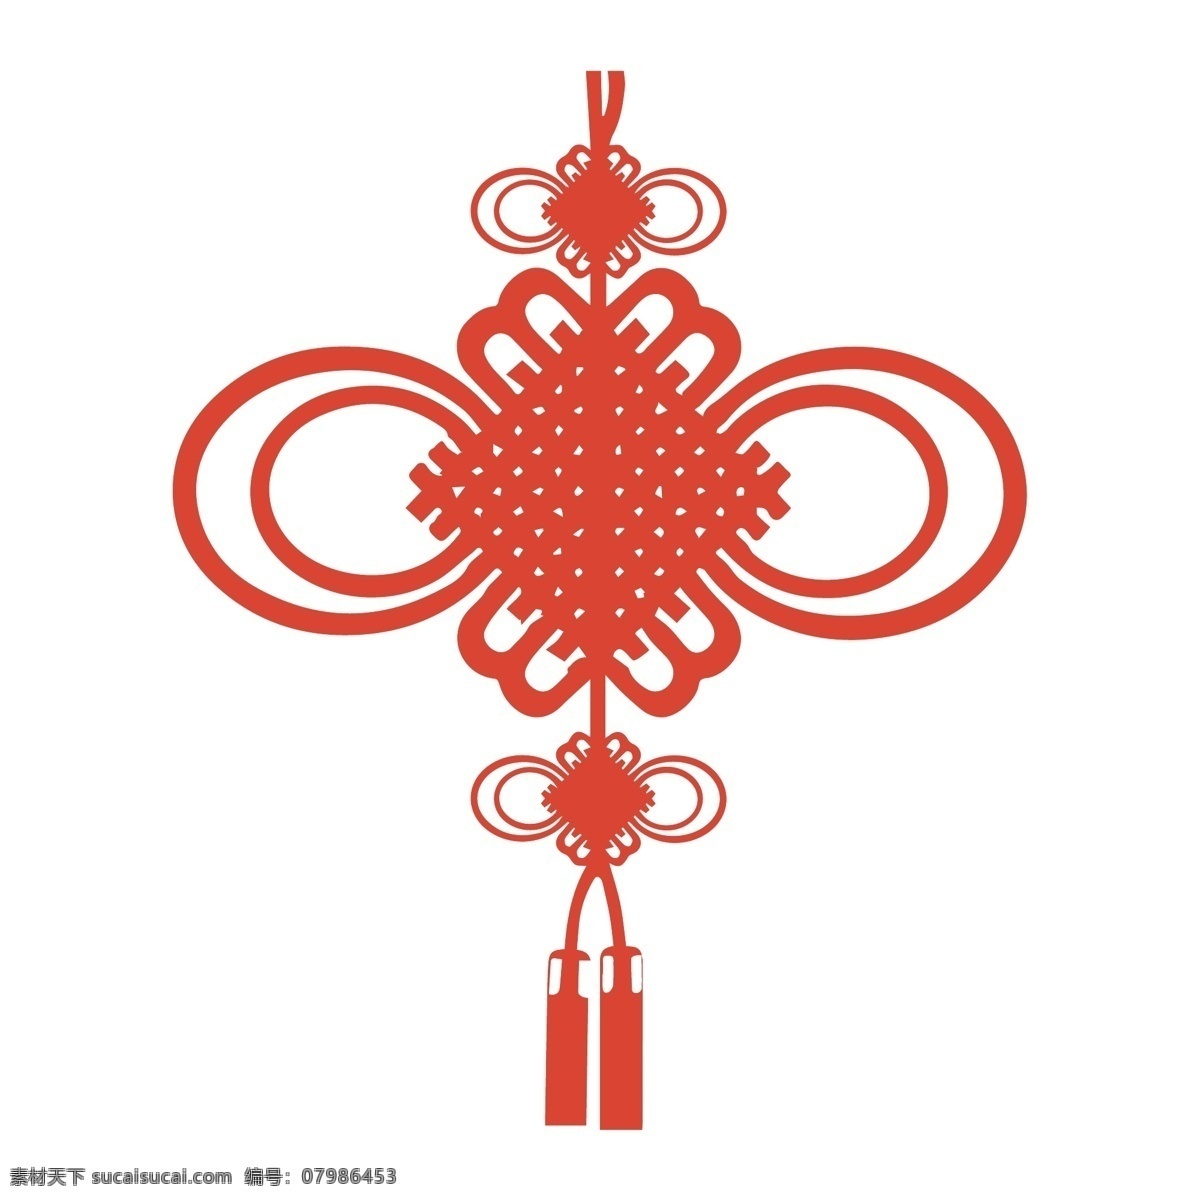 中国结图片 中国结 结 春节 节日装饰 装饰品 吊坠 饰品 装饰 红色结 素材图